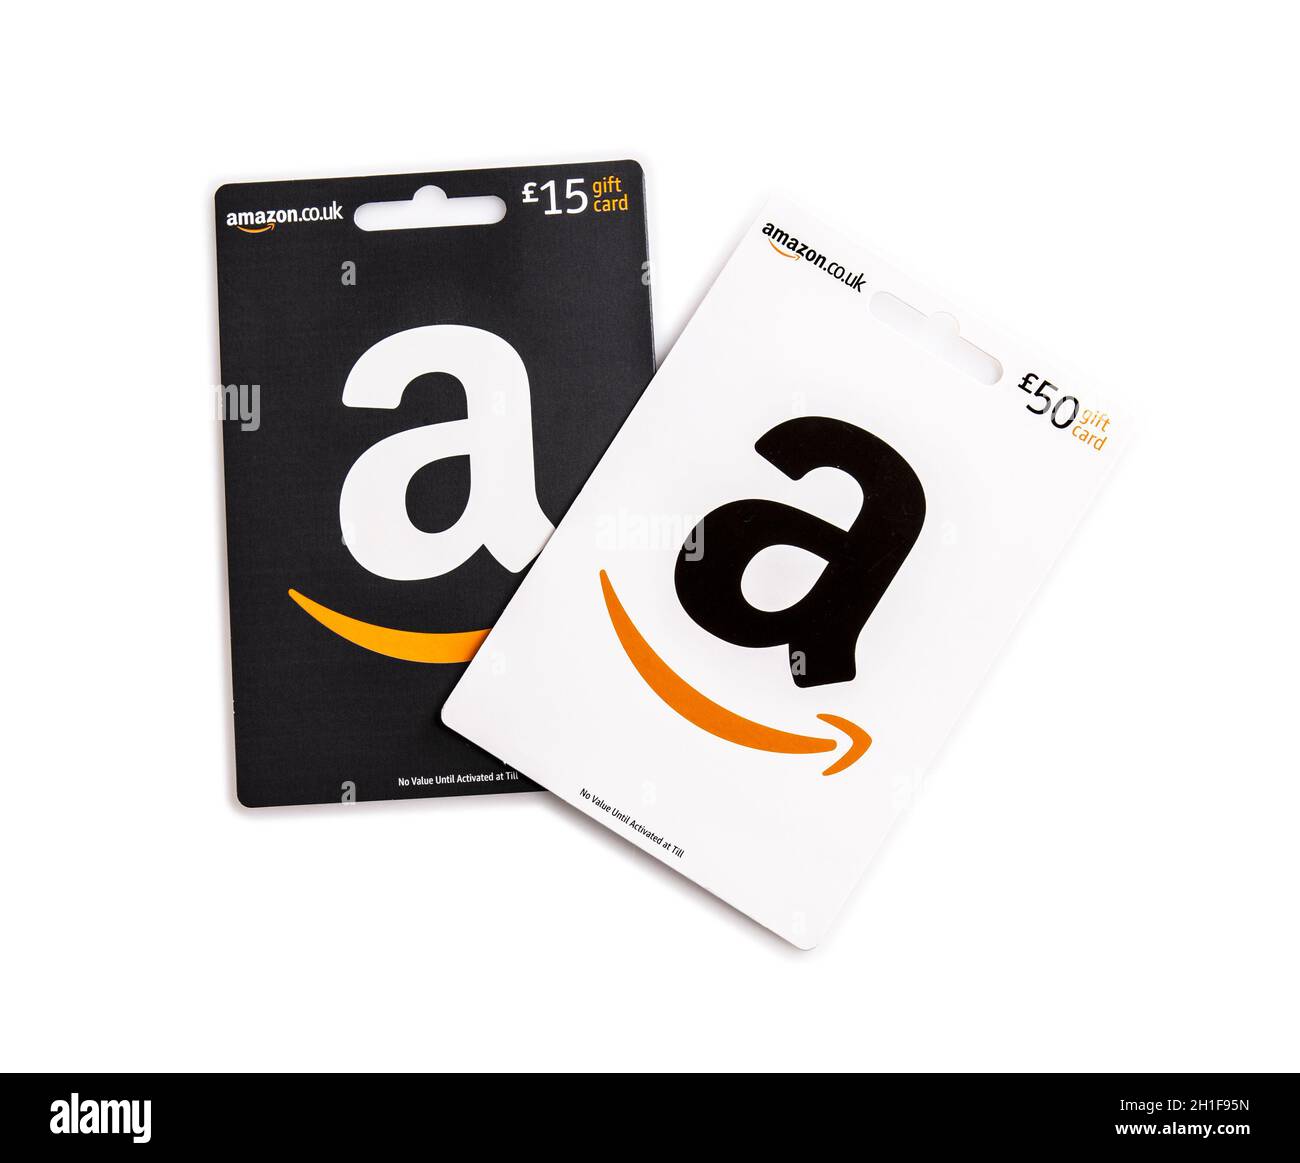 Amazon gift cards Banque de photographies et d'images à haute résolution -  Alamy